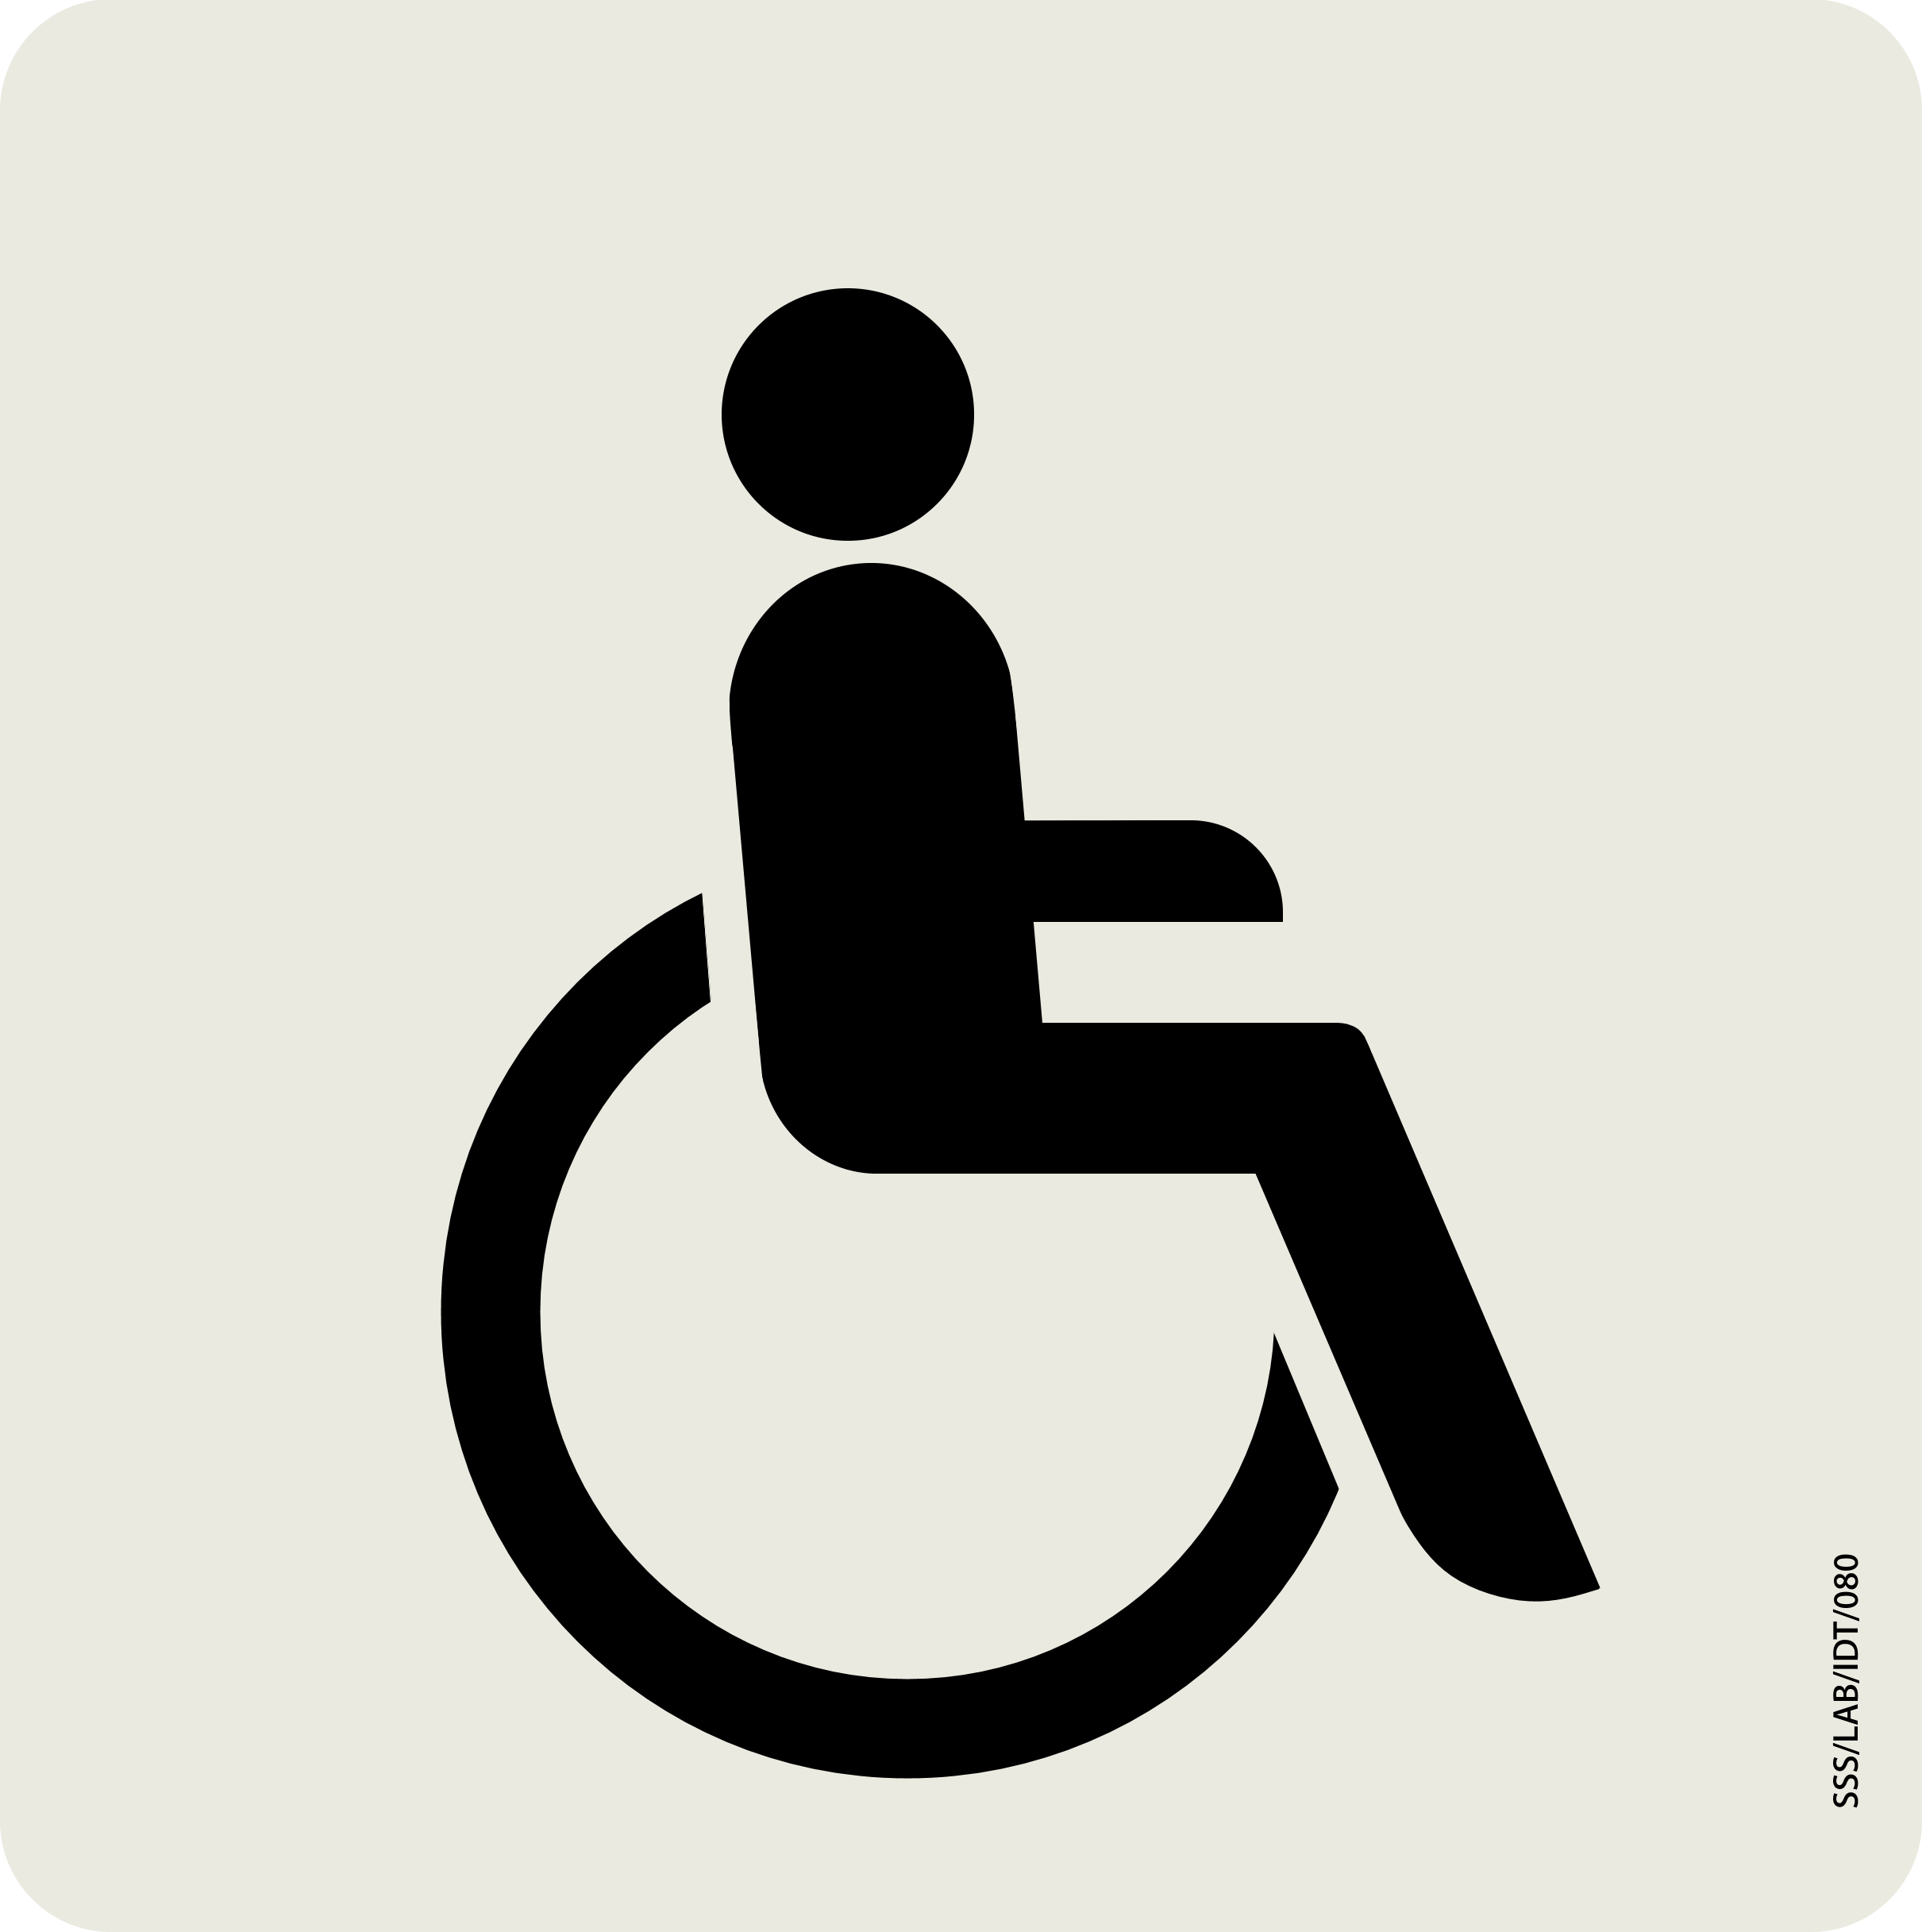 MTR Wheelchair sticker